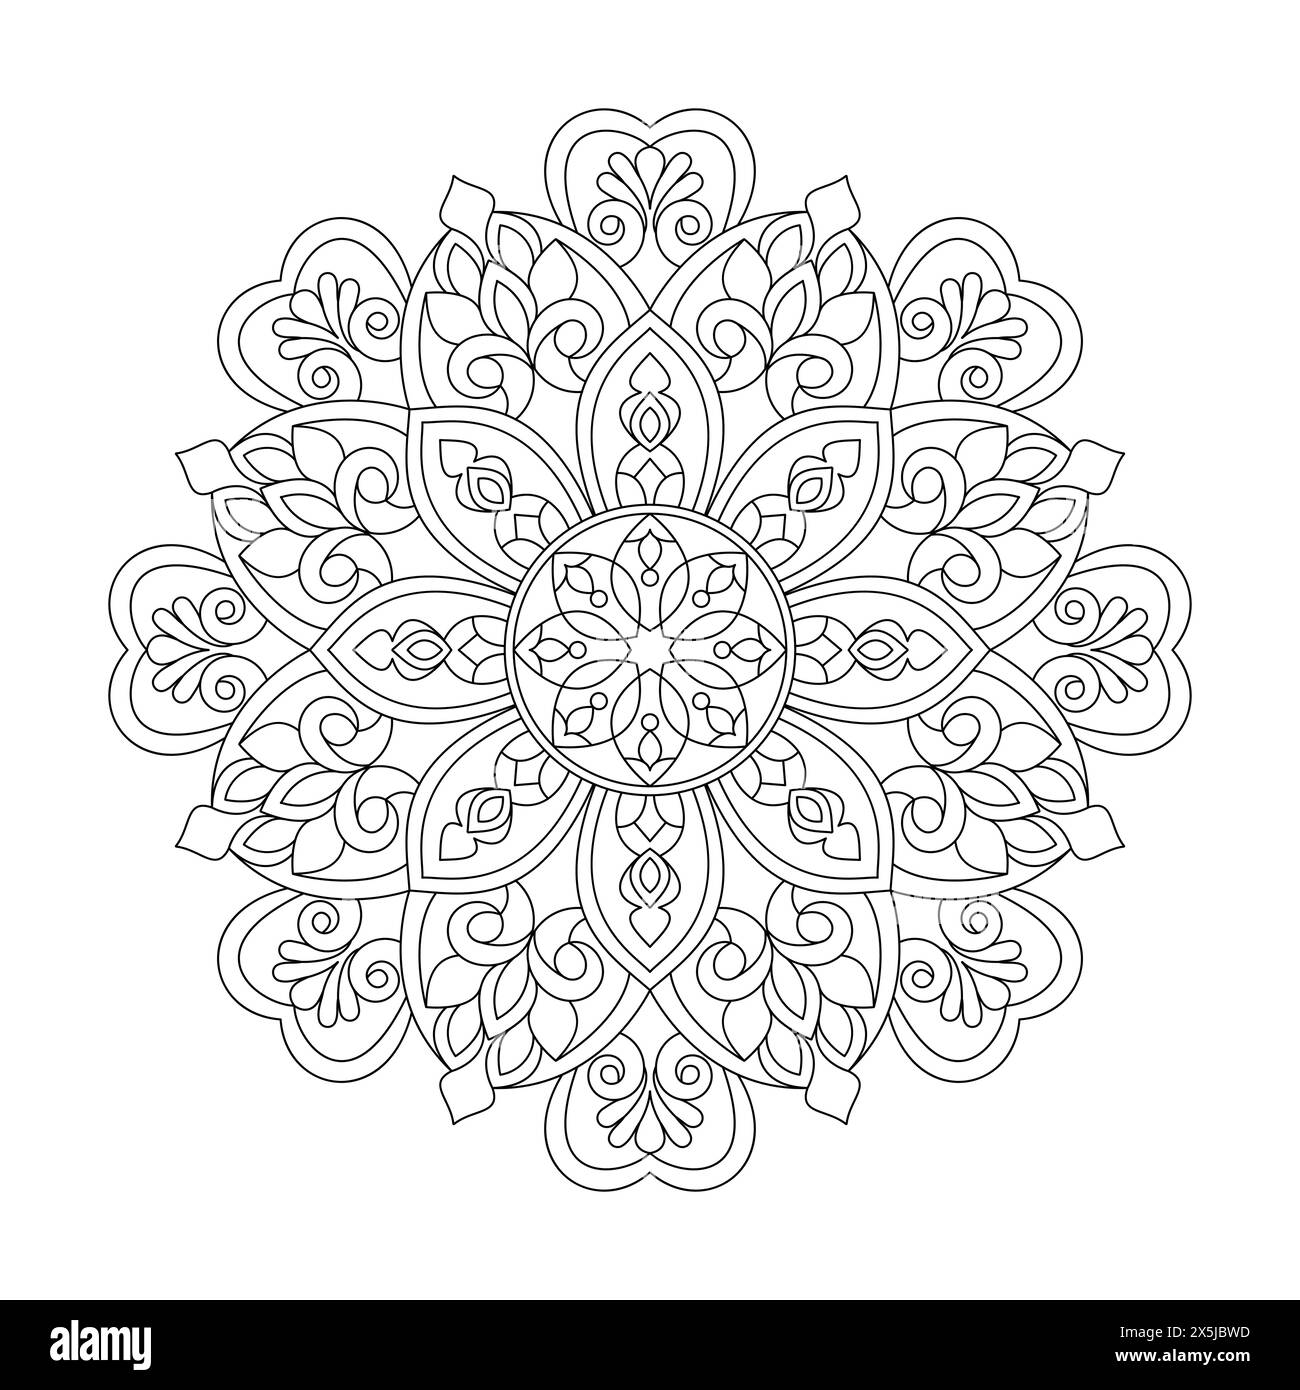 Pagina del libro da colorare Garden of Floral Mandala per l'interno del libro kdp. Petali tranquilli, capacità di rilassarsi, esperienze cerebrali, Haven armonioso, po pacifico Illustrazione Vettoriale